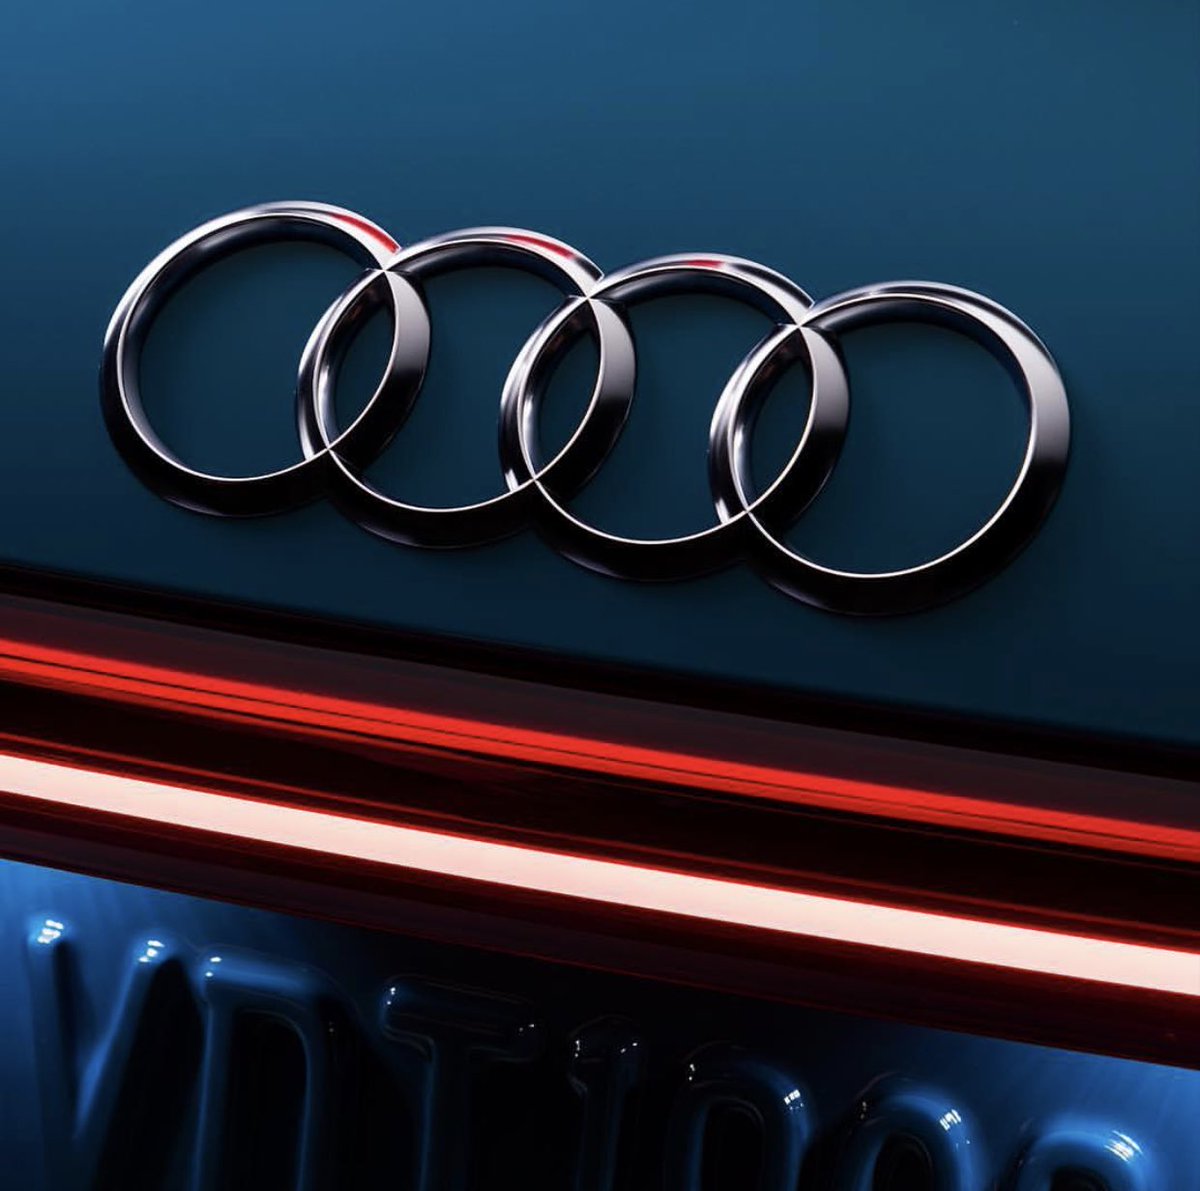 Noleggio a lungo termine Audi: scegli lo stile inconfondibile